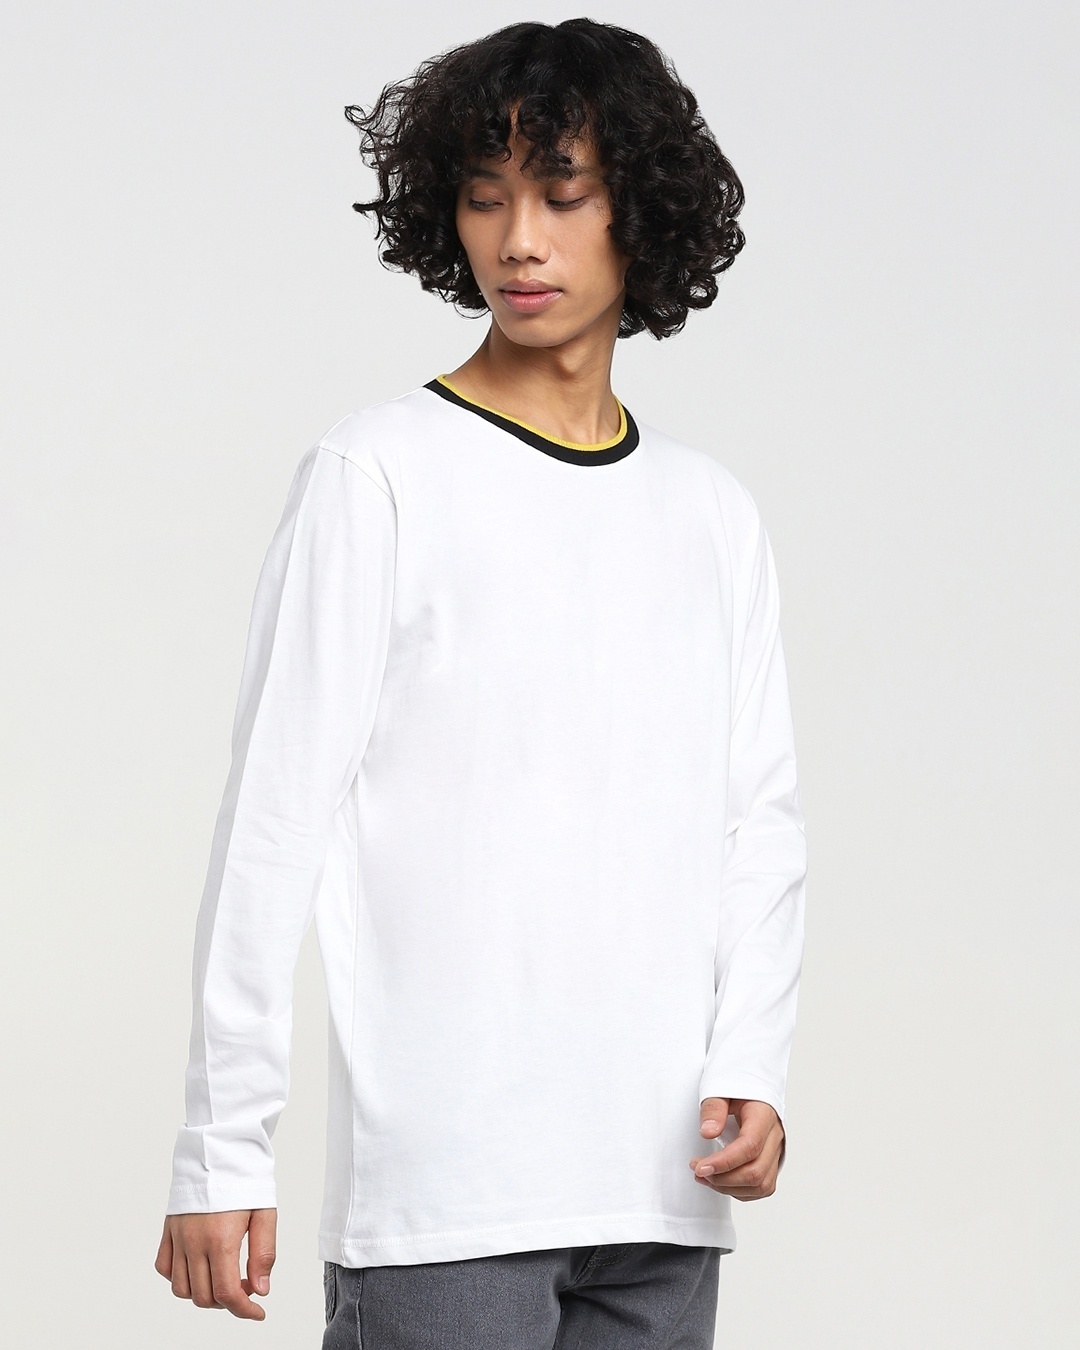 Buy White Varsity Full Sleeve T-shirt for Men white Online at Bewakoof